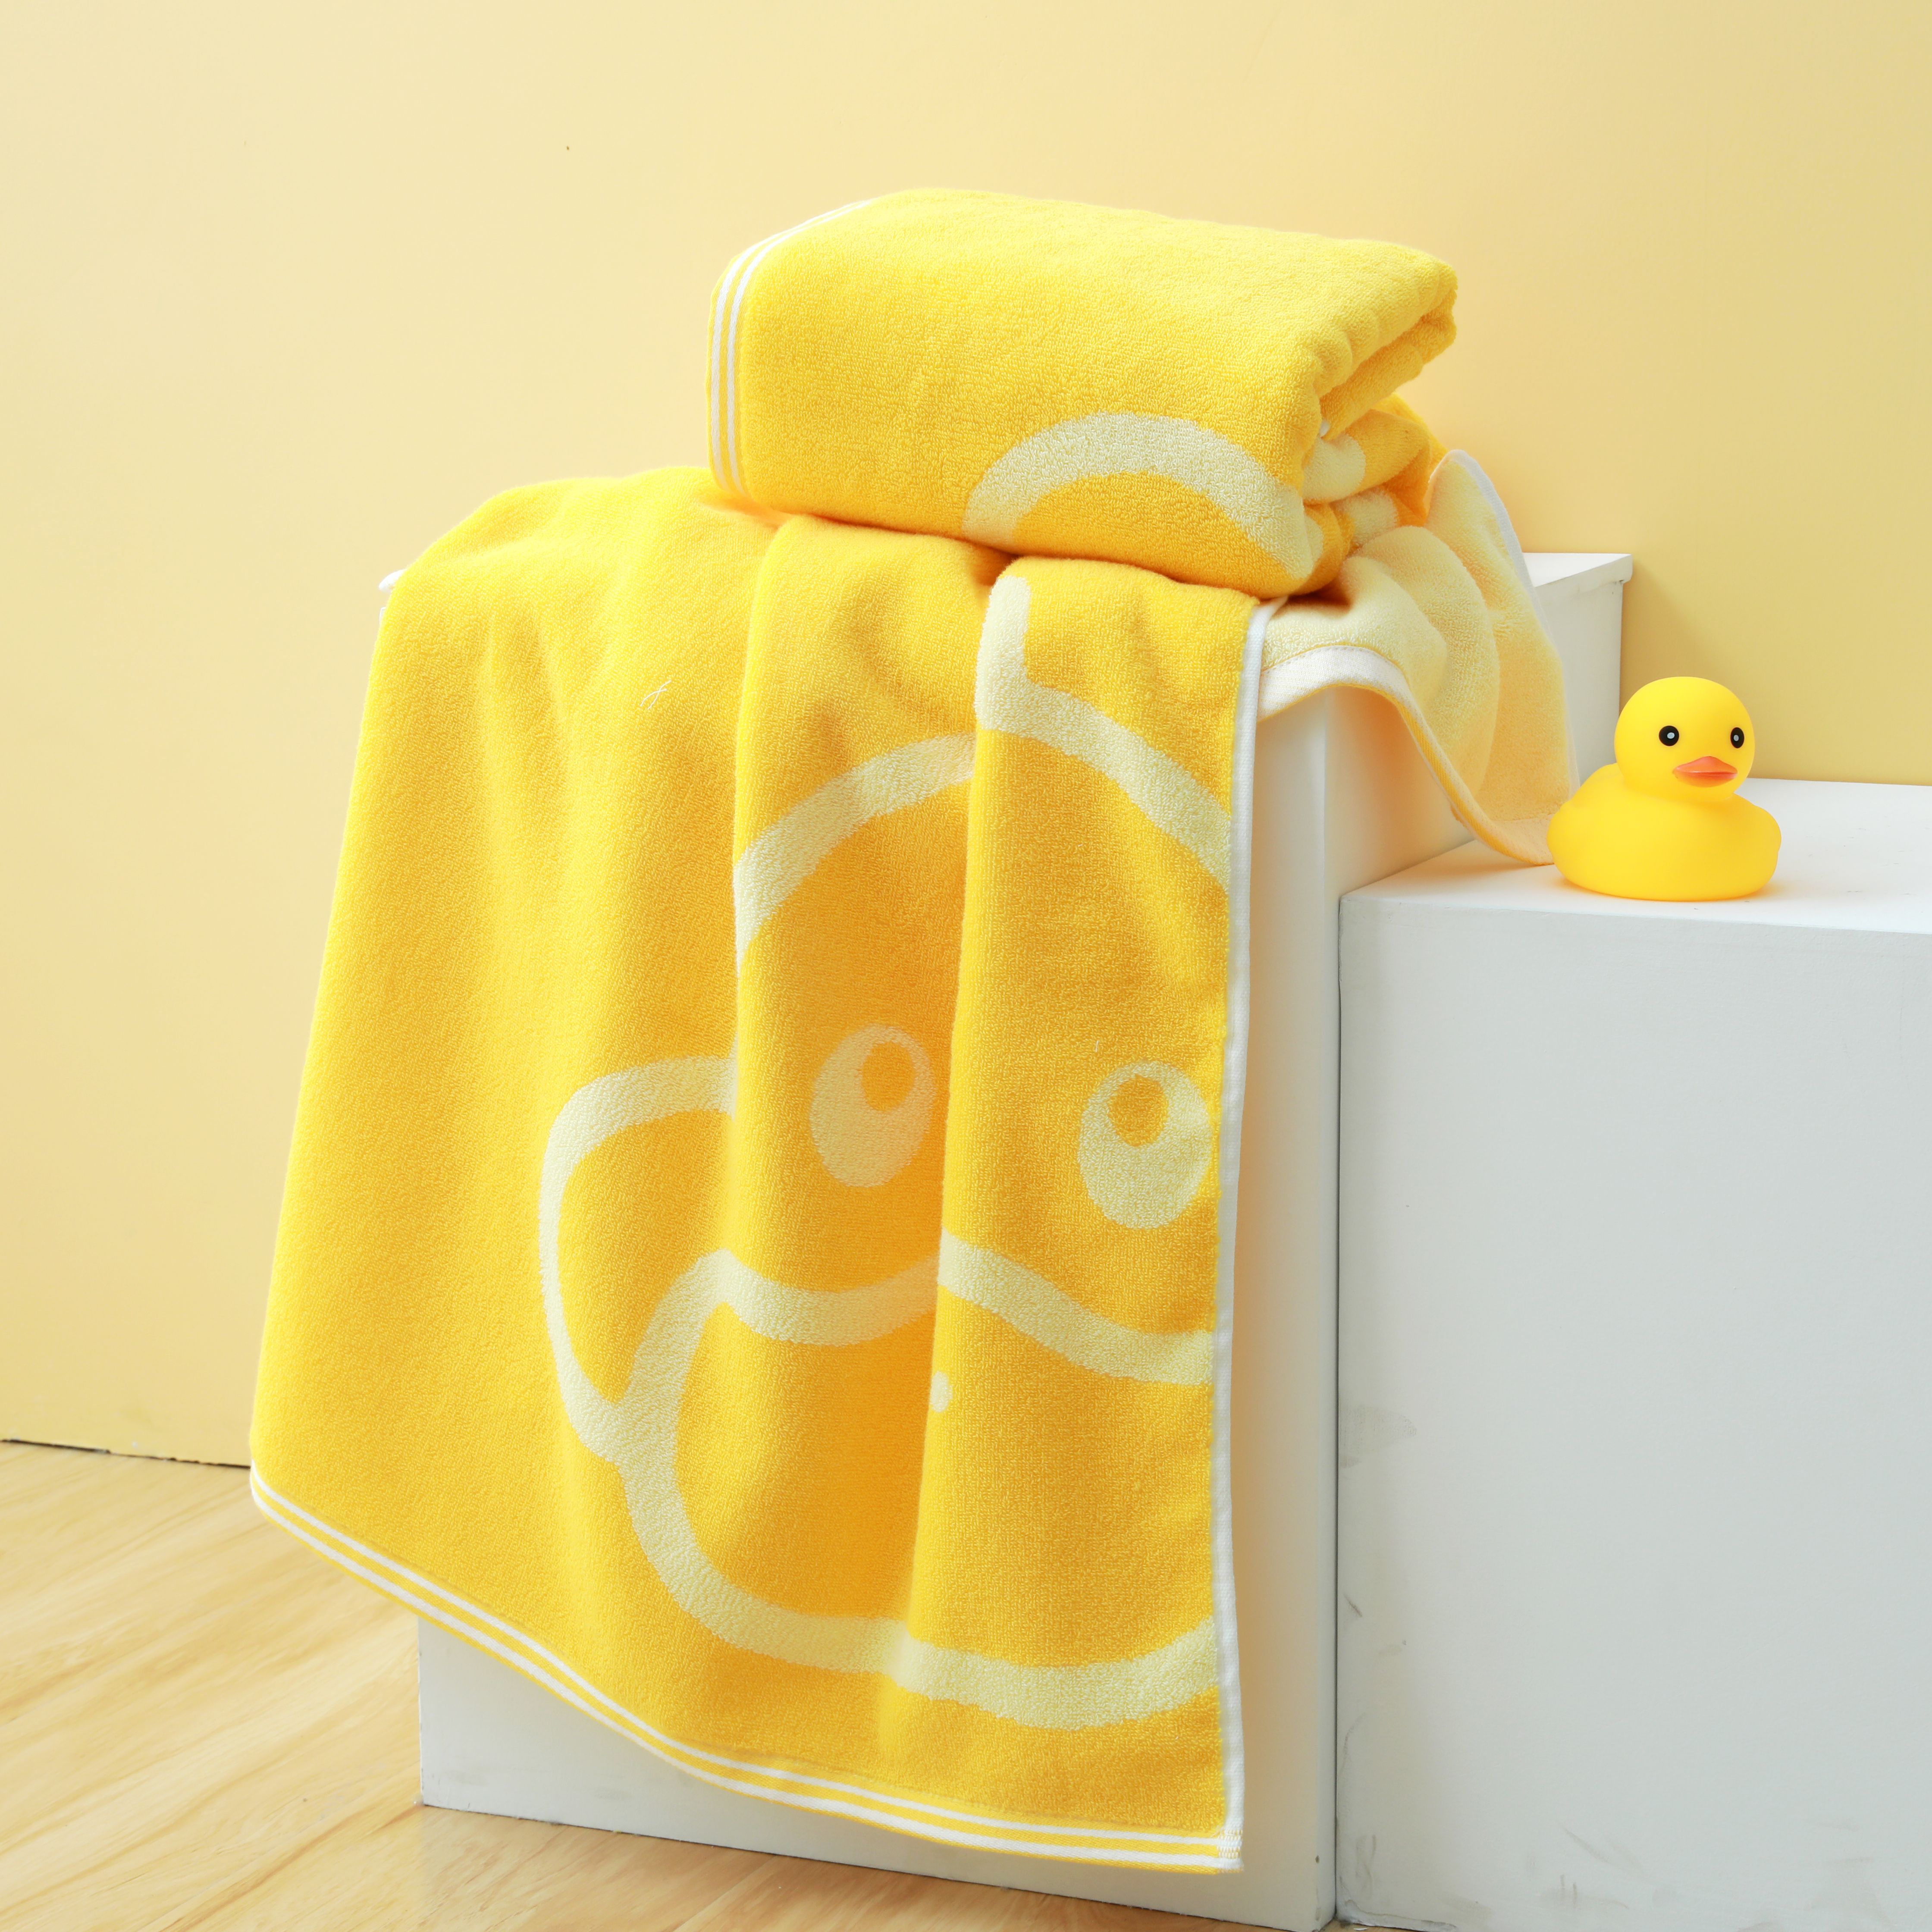 G.DUCK小黄鸭系列浴巾毛巾两条装组合 秒杀专用款式详情图2